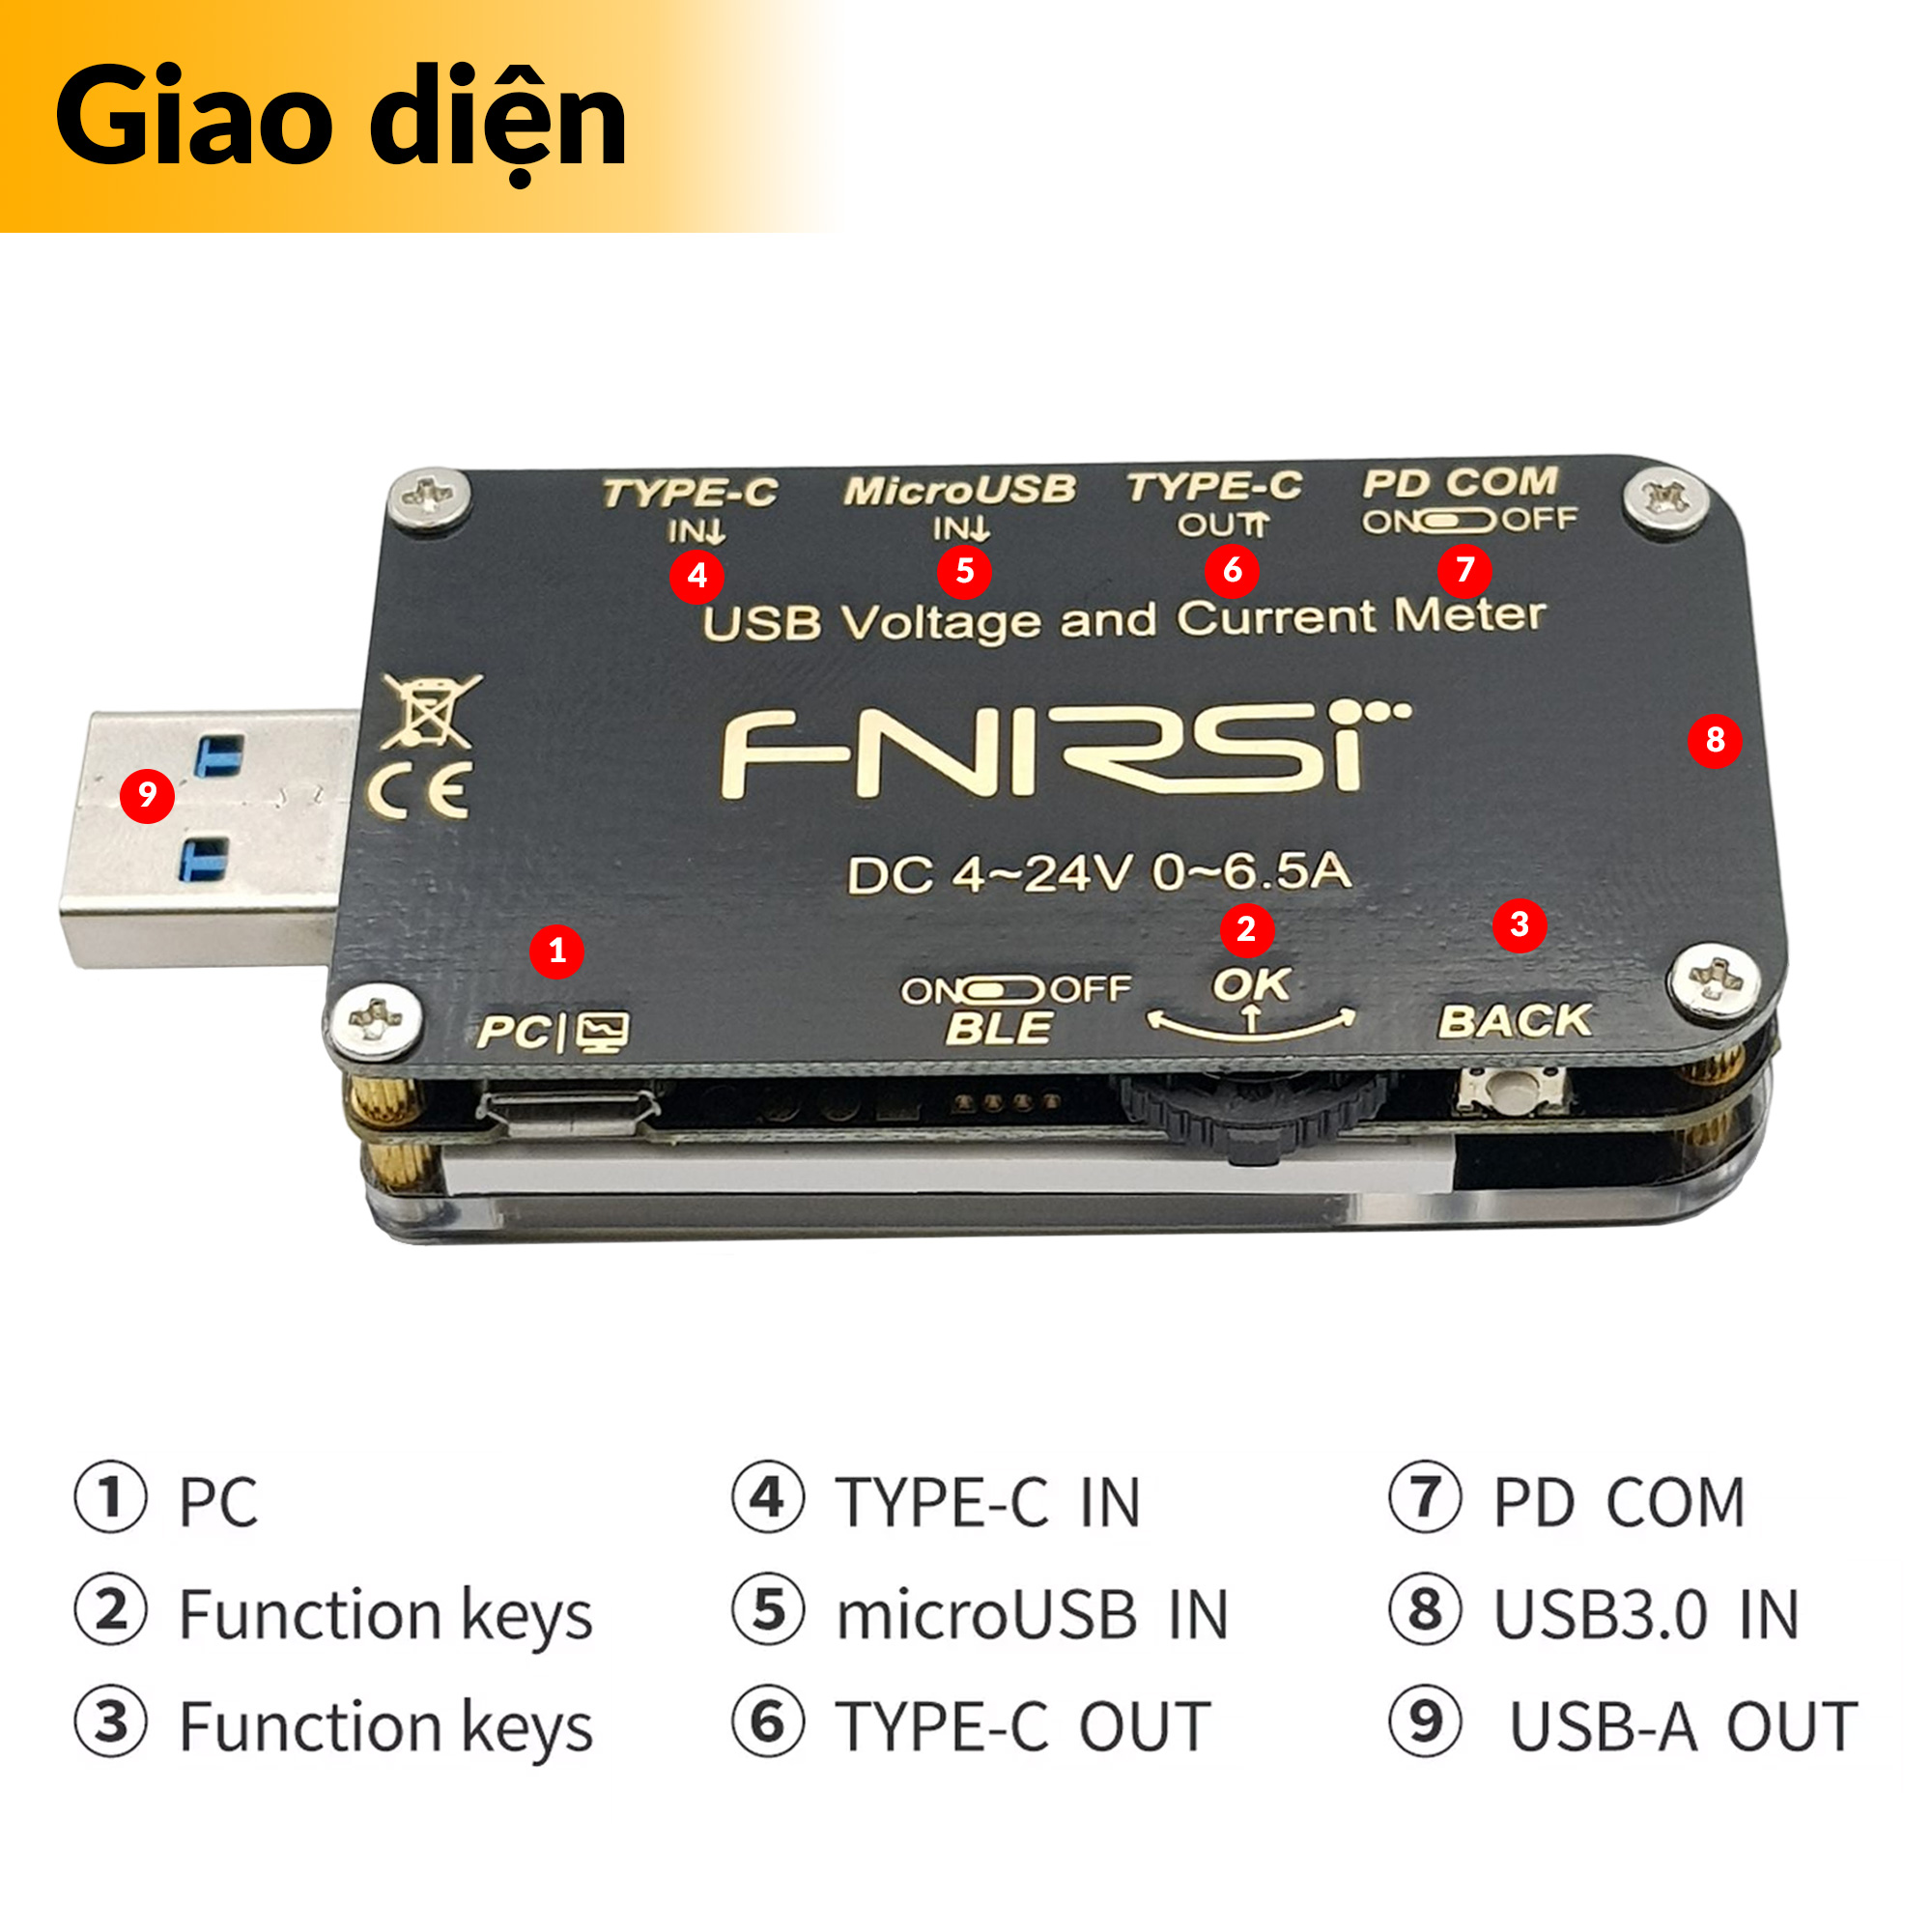 Giao diện USB Tester kiểm tra đa năng FNB48S chính hãng FNIRSI